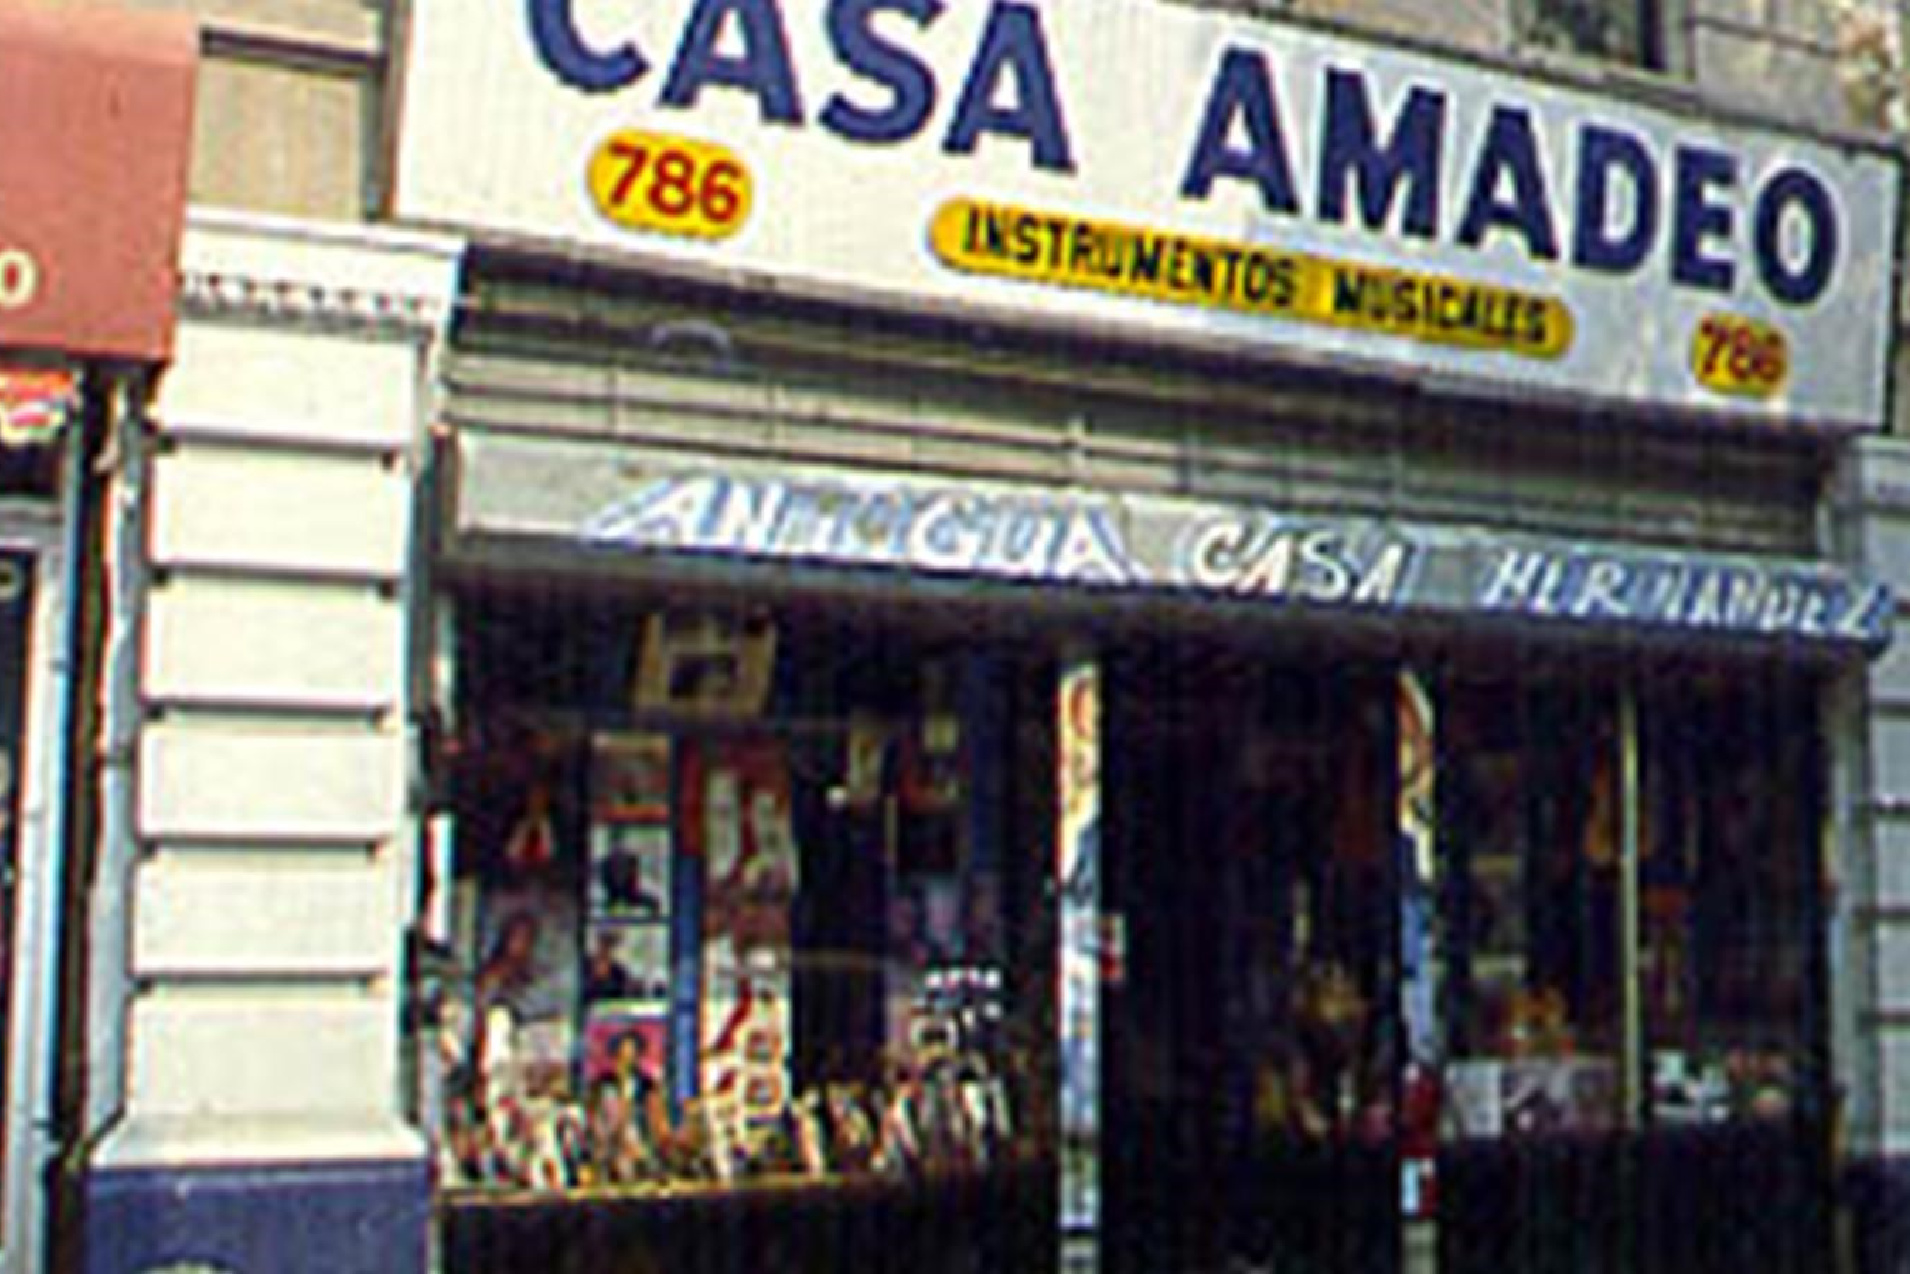 Casa Amadeo Nuestro Stories